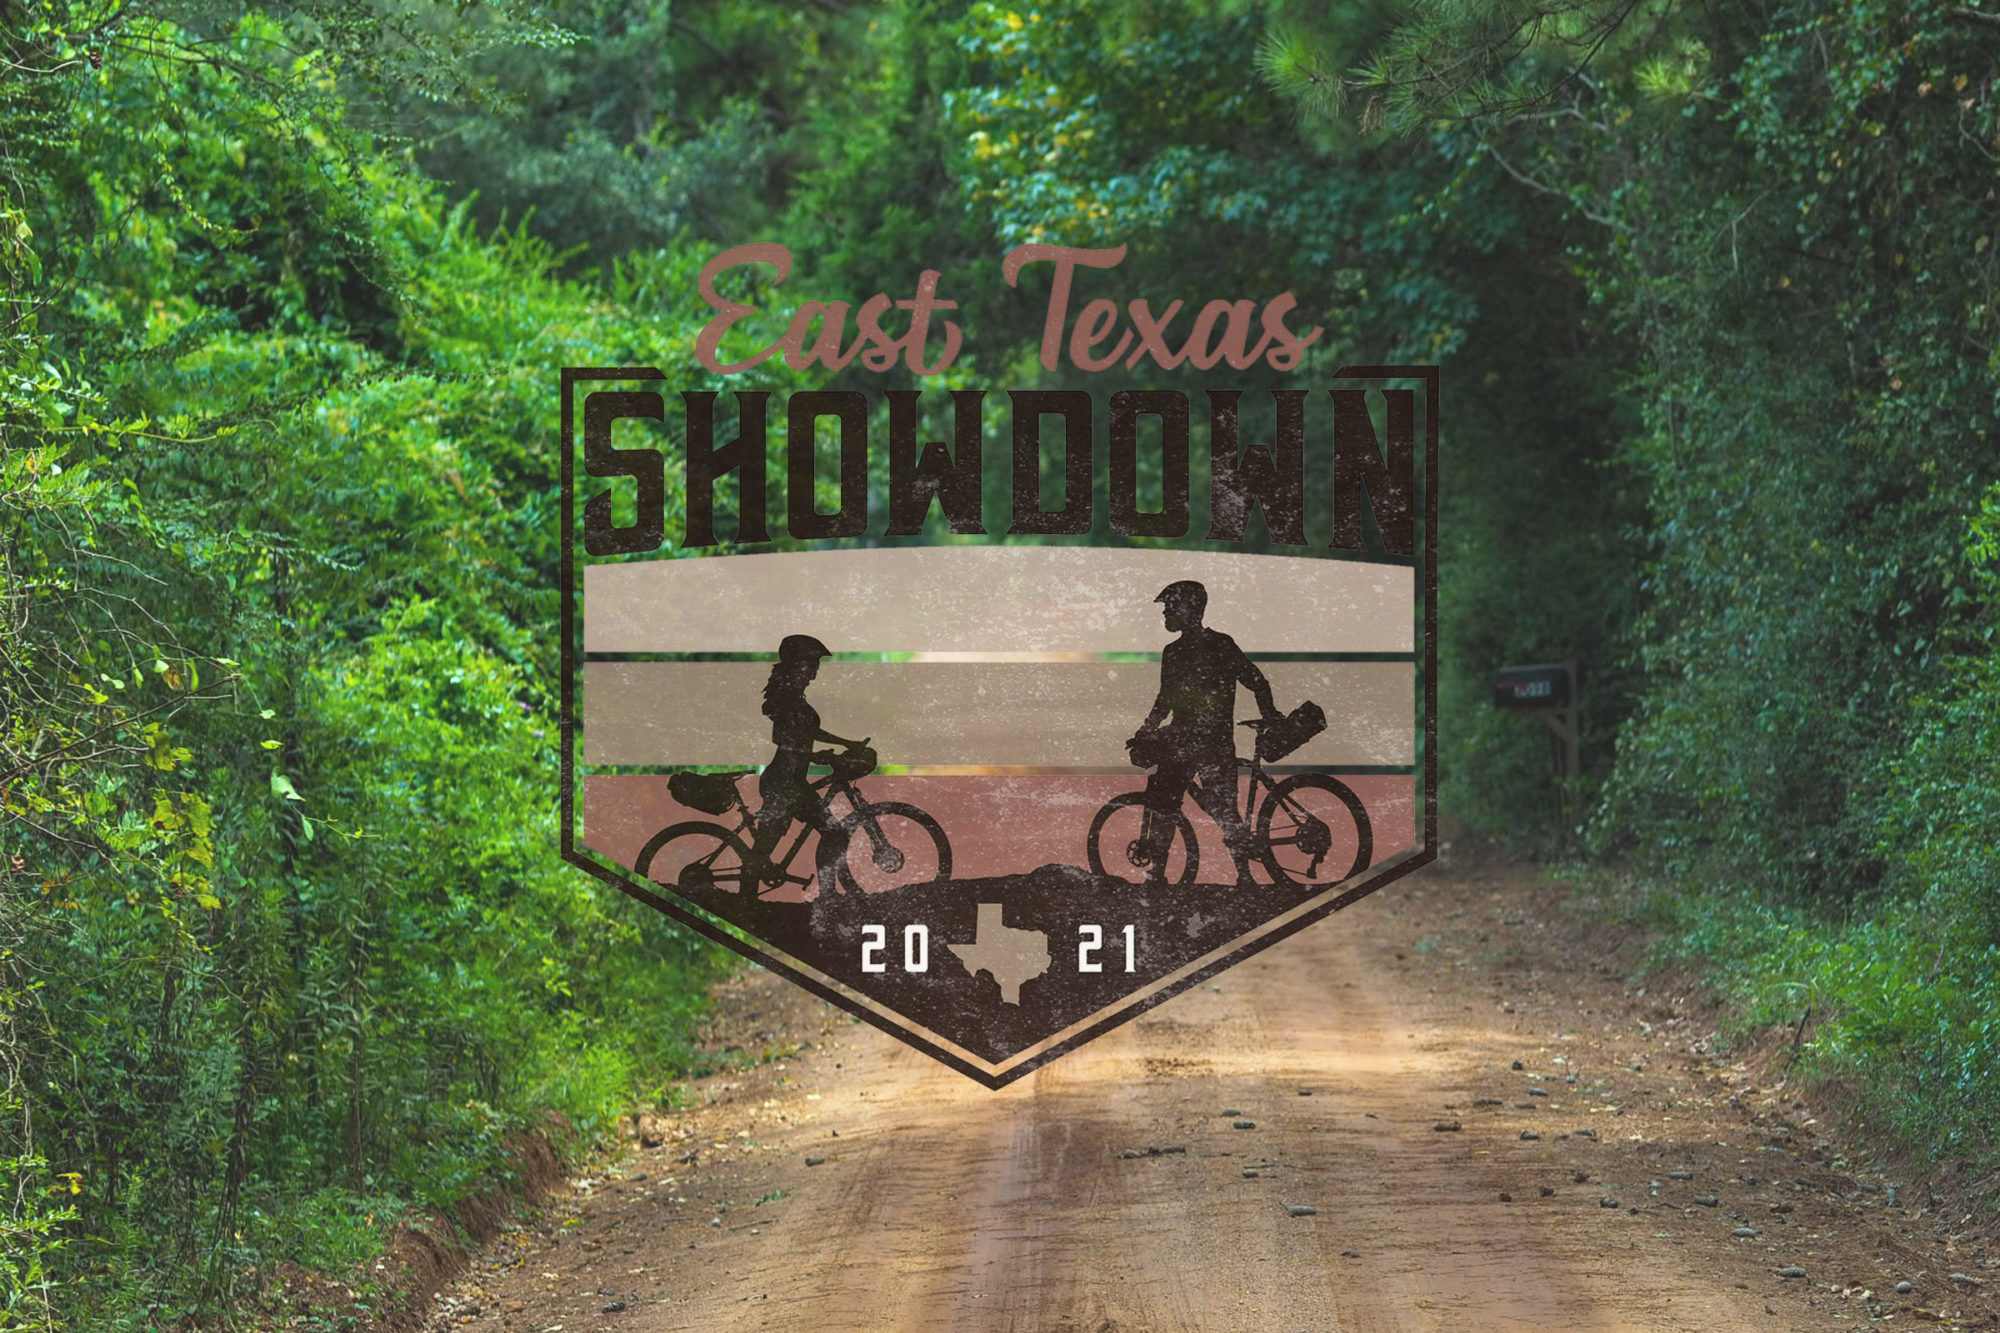 East Texas Showdown